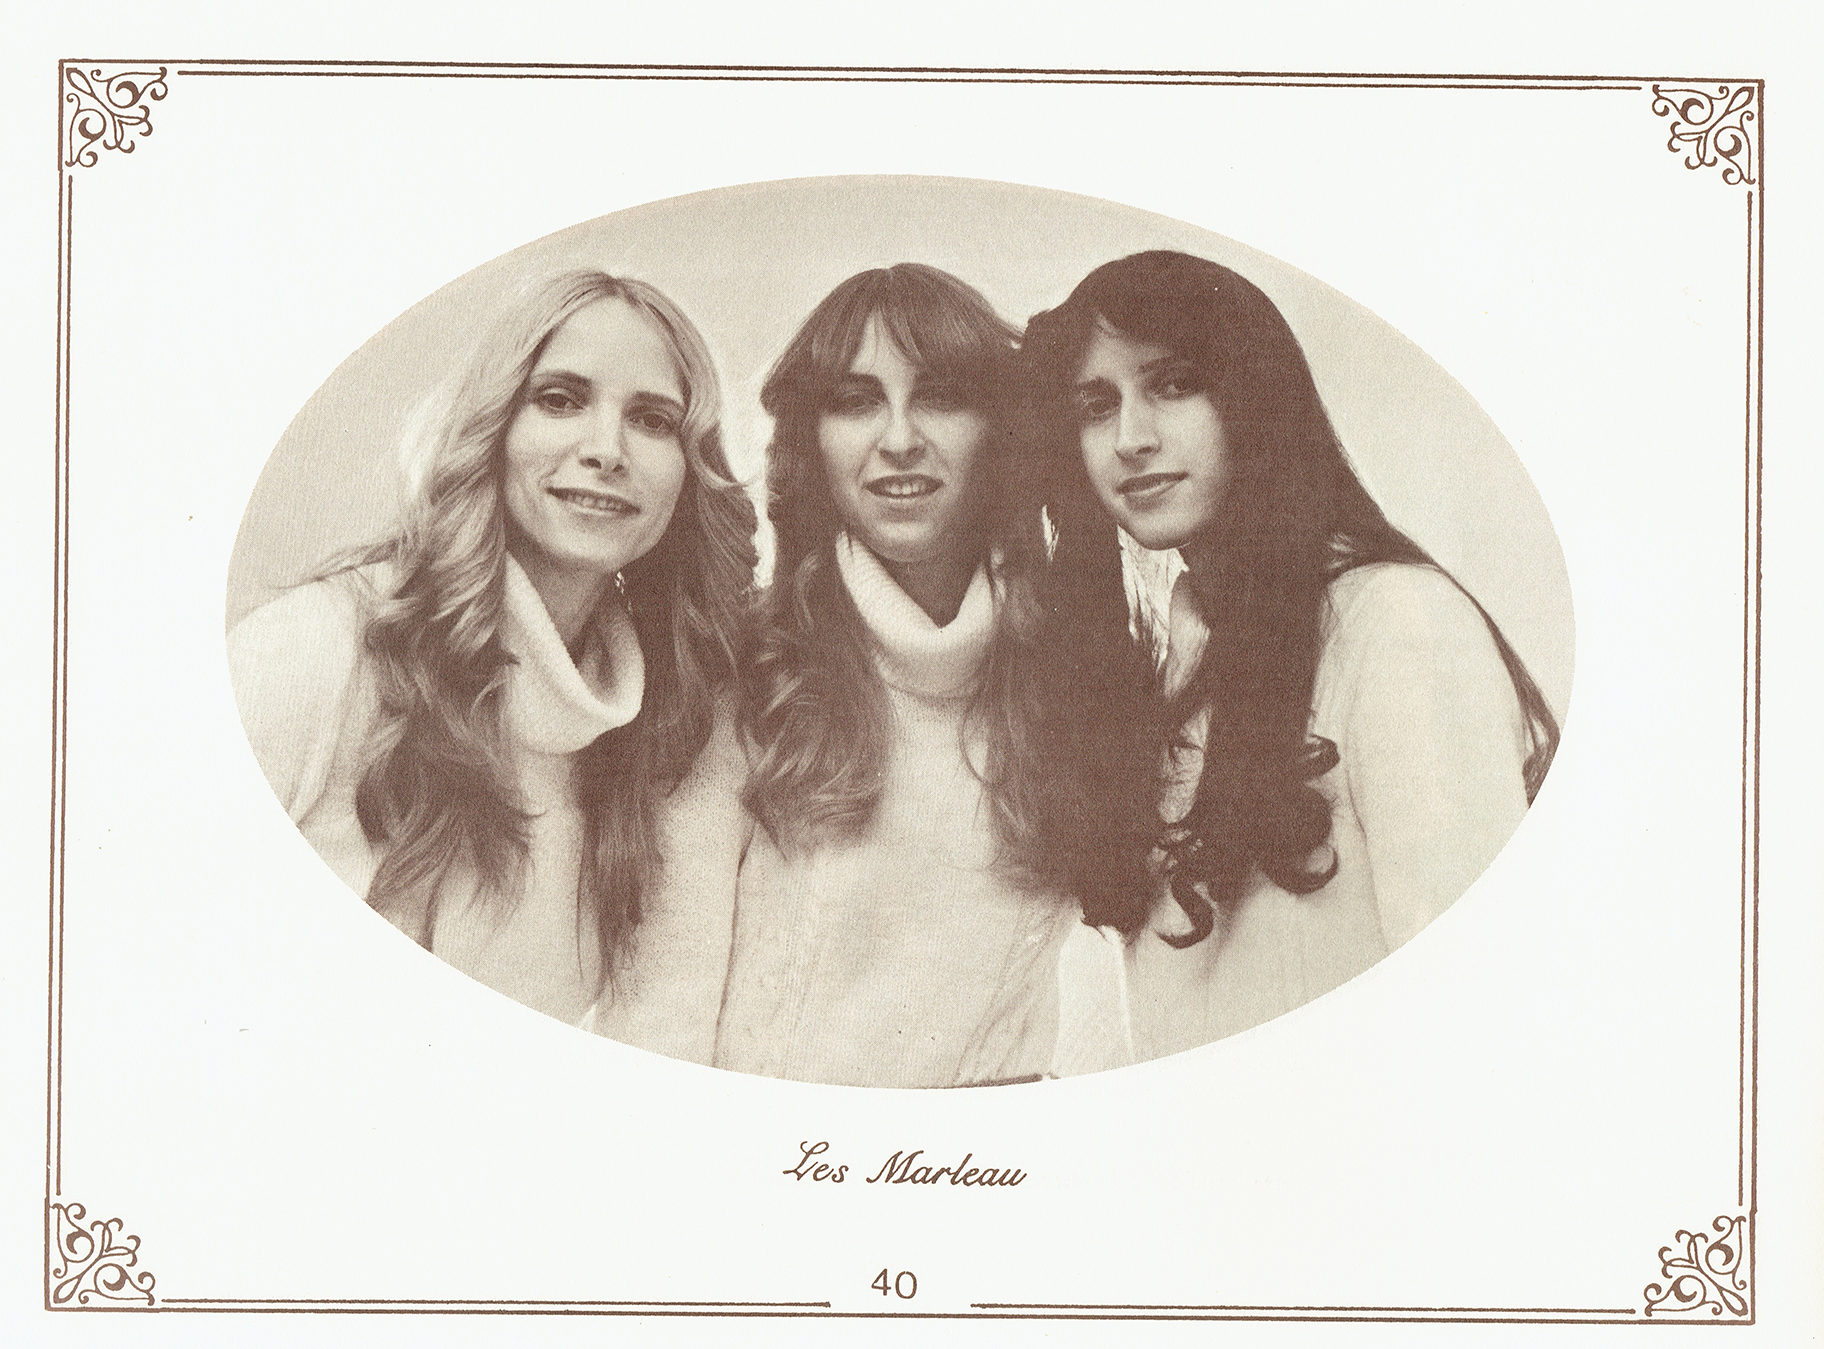 1979 1ère affiche Les soeurs Marleau